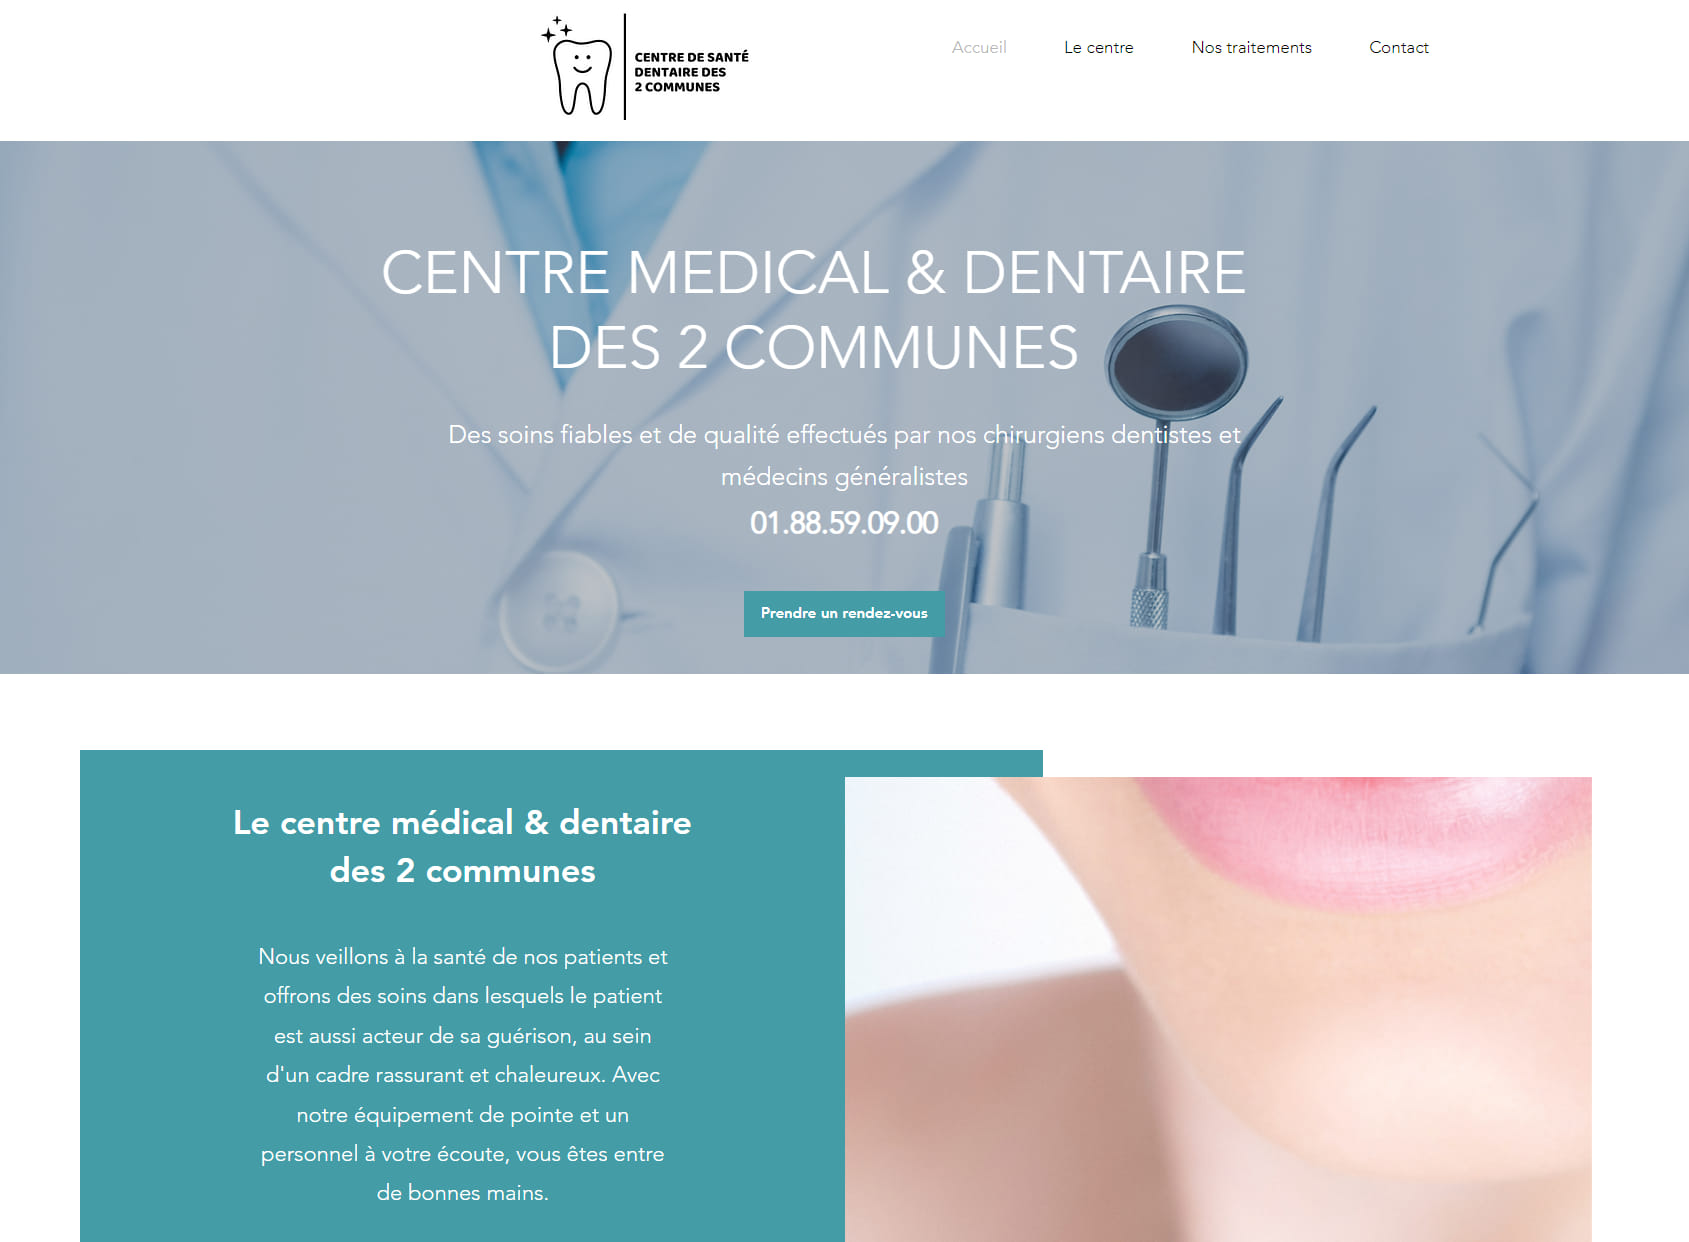 Centre médical & dentaire des 2 communes